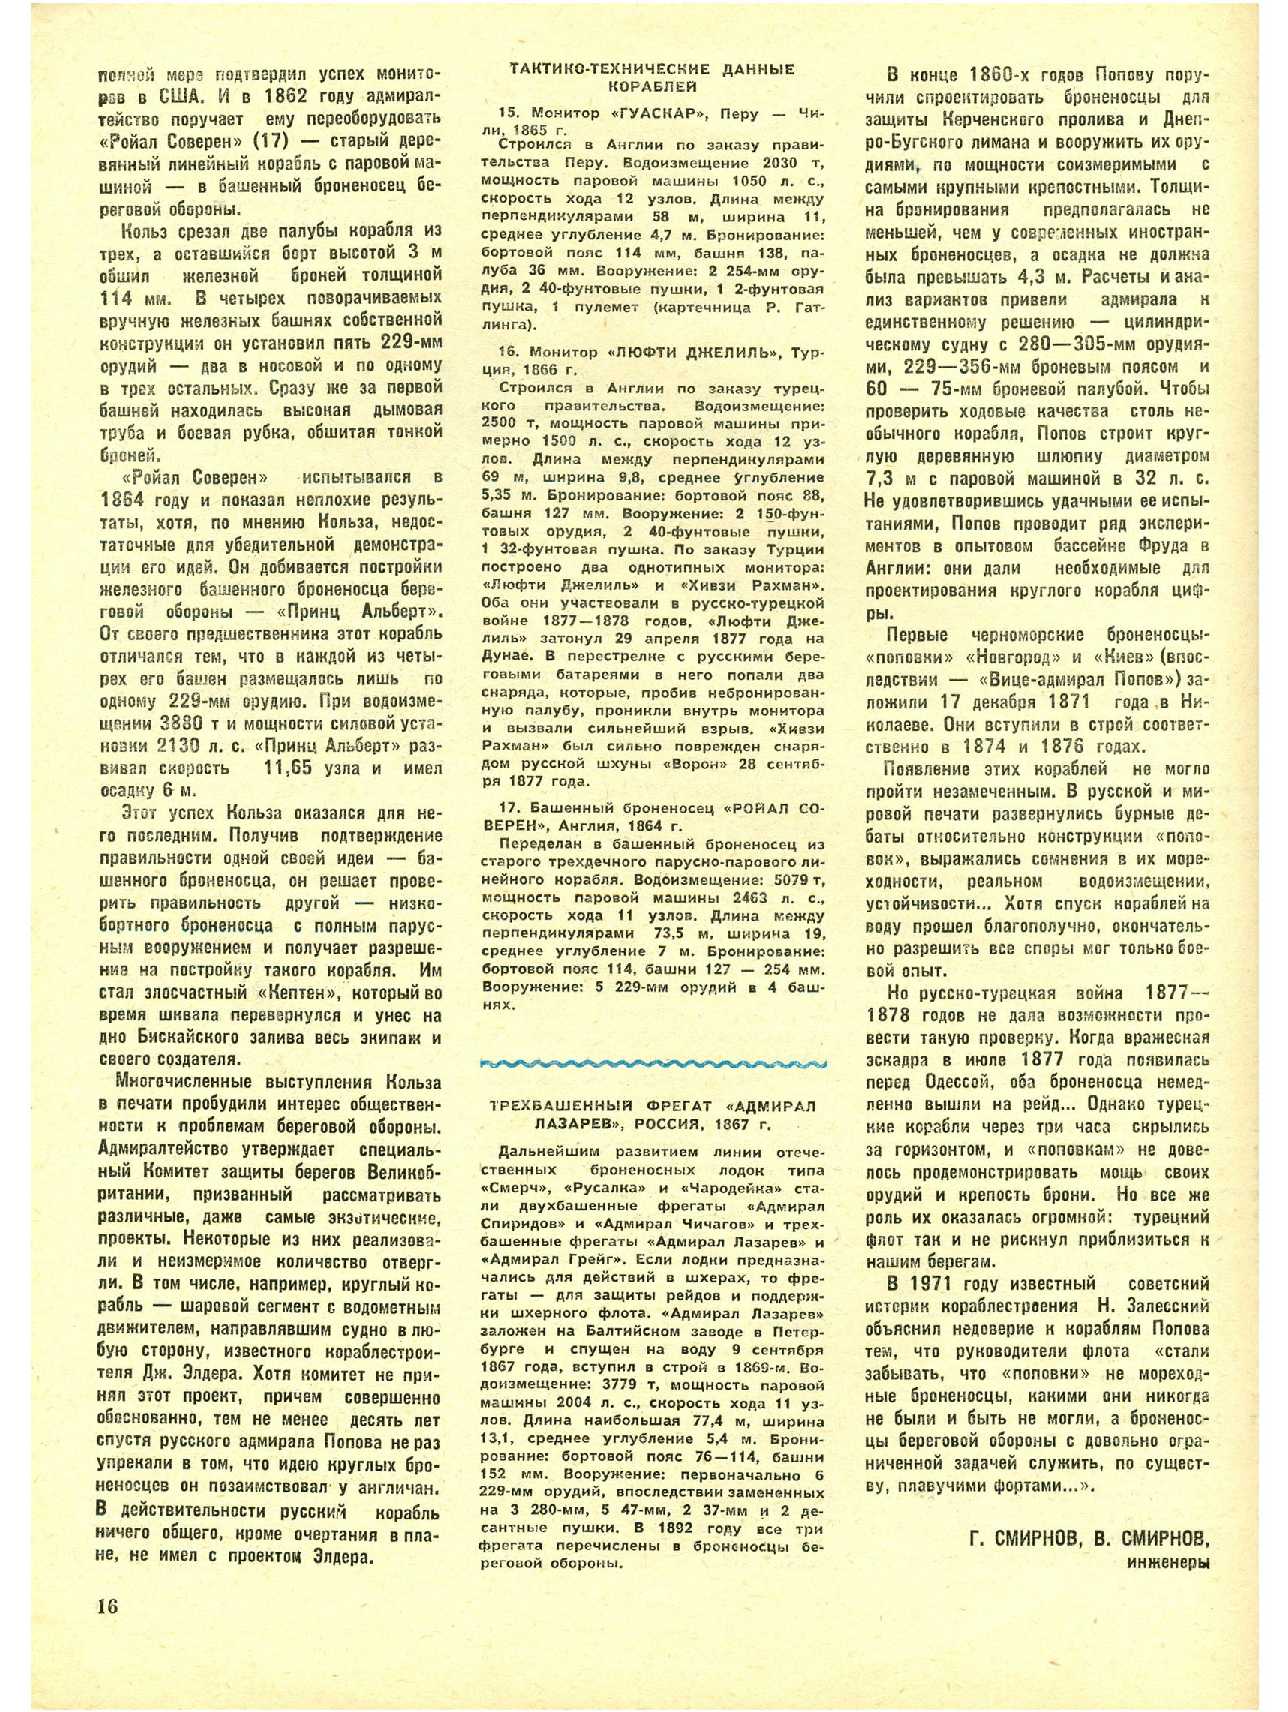 МК 2, 1984, 16 c.